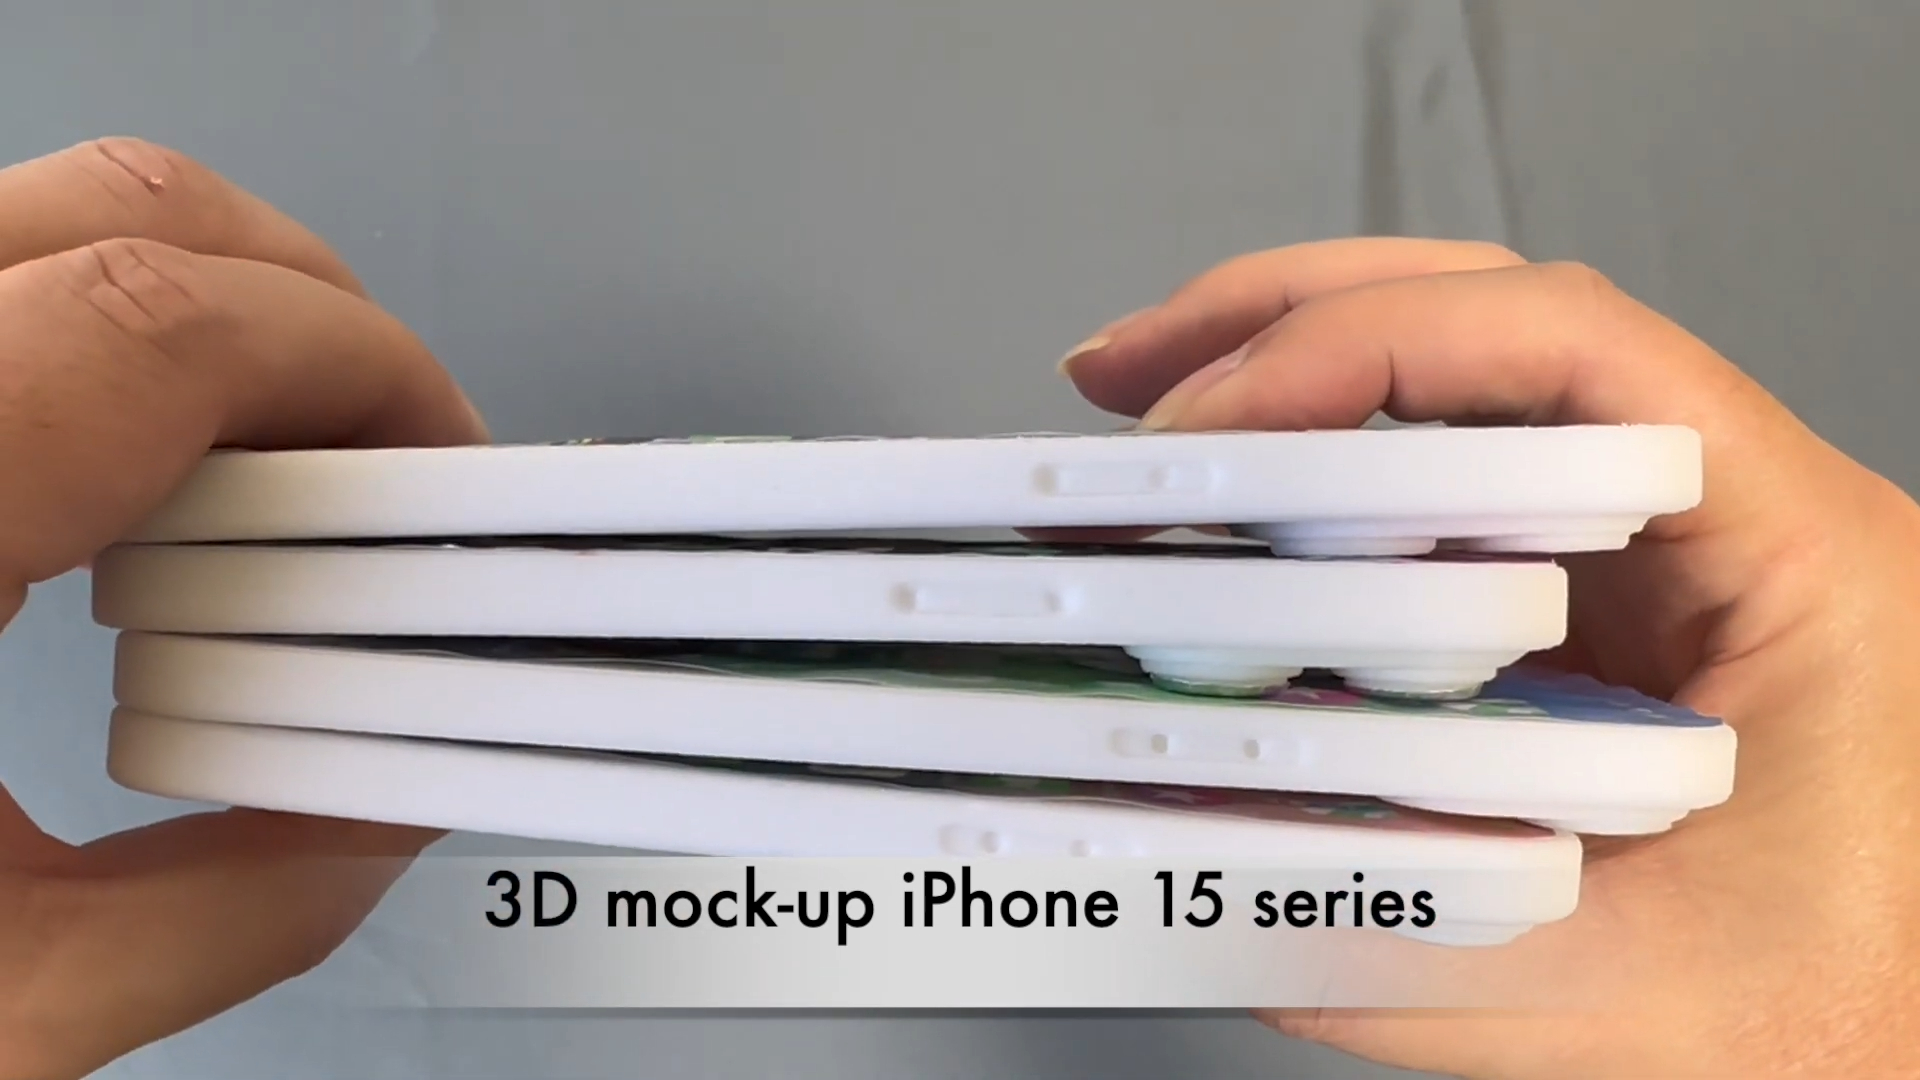 Mô hình bộ 4 iPhone 15 lần đầu xuất hiện thực tế: Viền siêu mỏng, chốt thiết kế siêu sang - Ảnh 9.